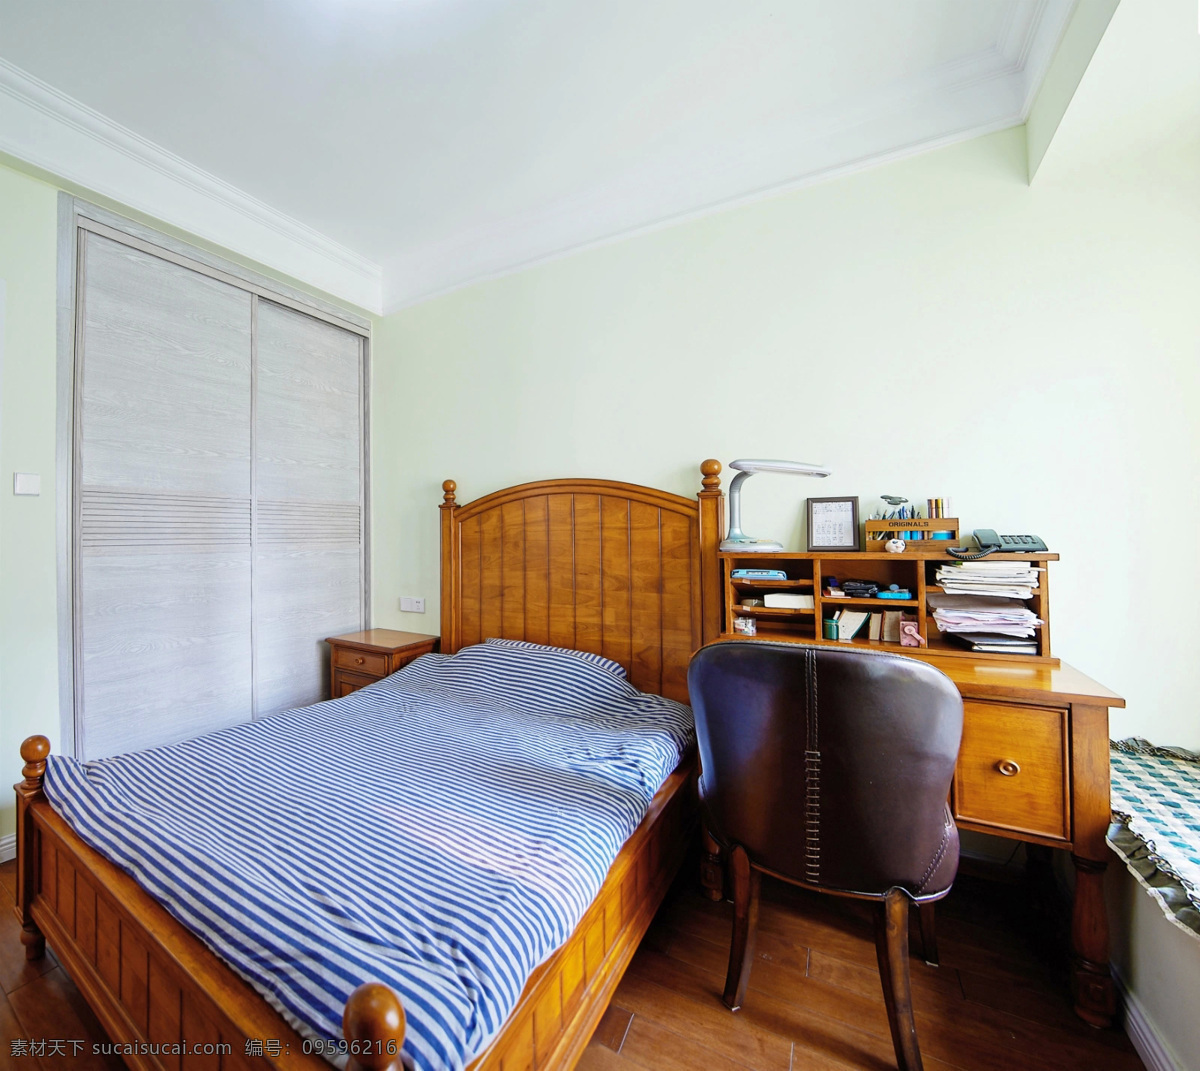 简约 木质 床头 效果图 卧室 软装效果图 室内设计 展示效果 房间设计家装 家具